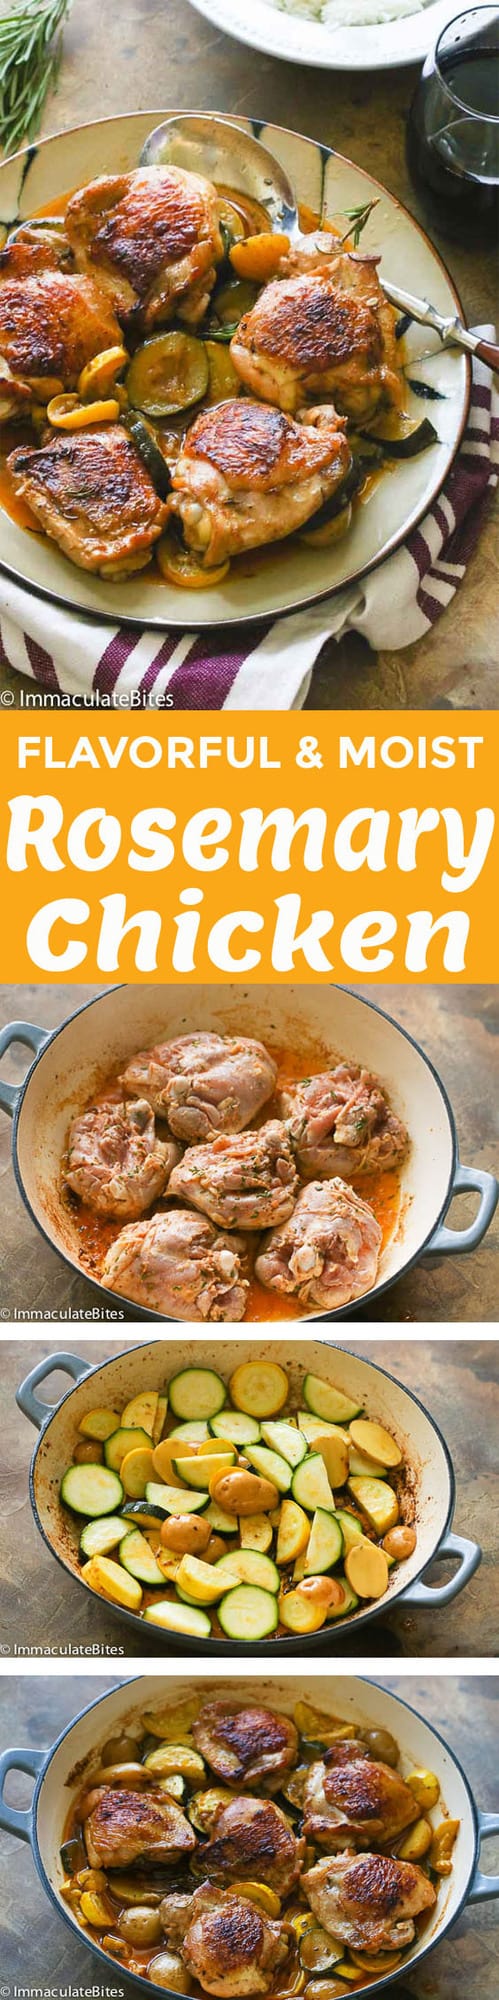 Rosemary Chicken